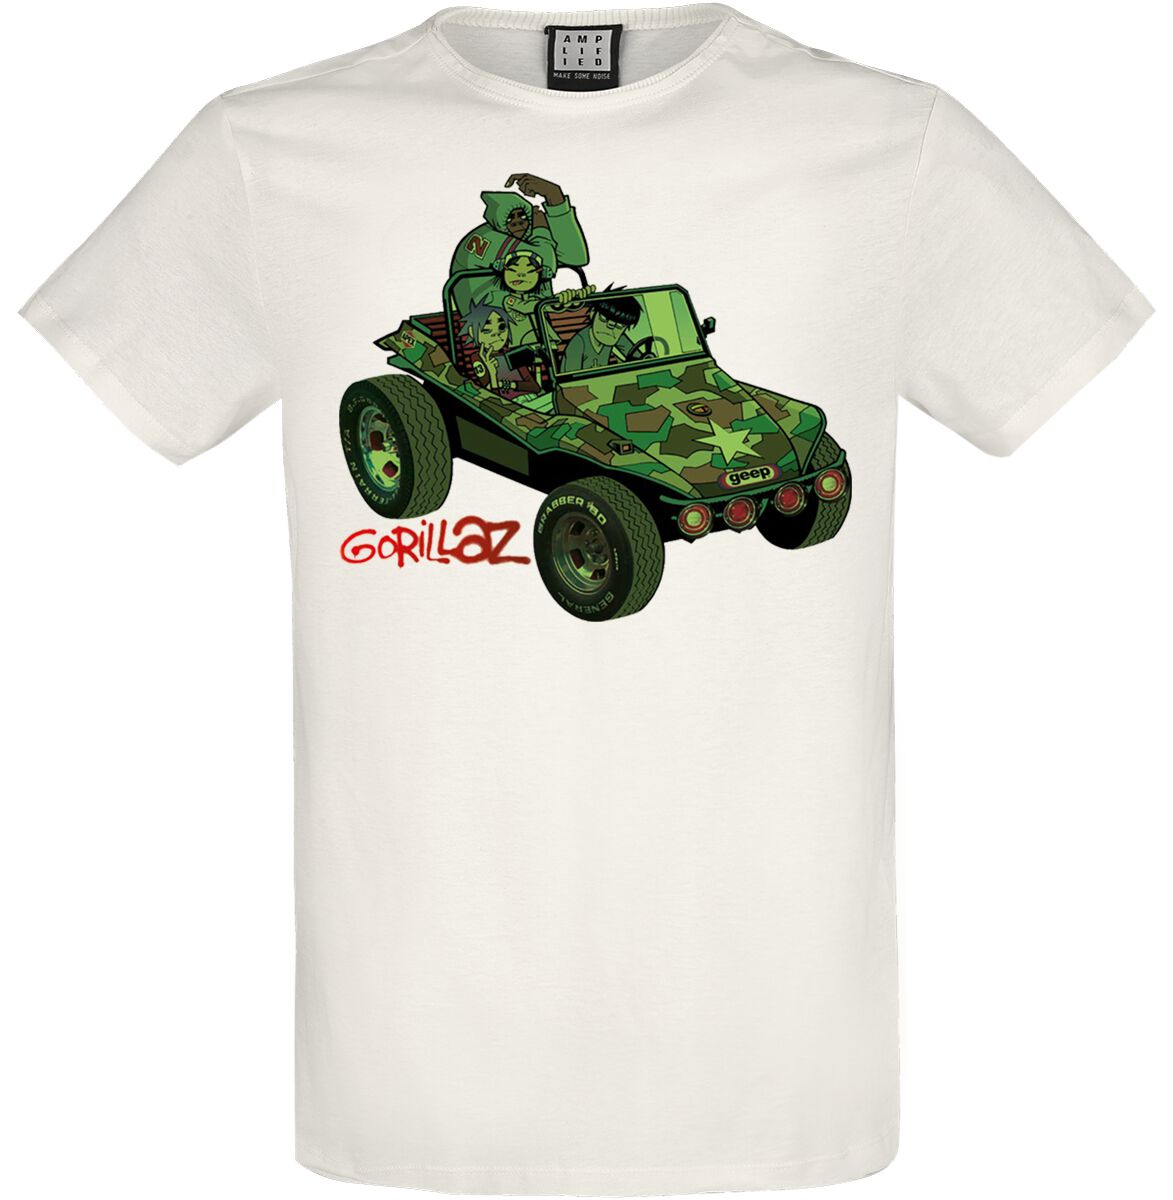 Gorillaz T-Shirt - Amplified Collection - Geep - L bis XXL - für Männer - Größe XL - altweiß  - Lizenziertes Merchandise!